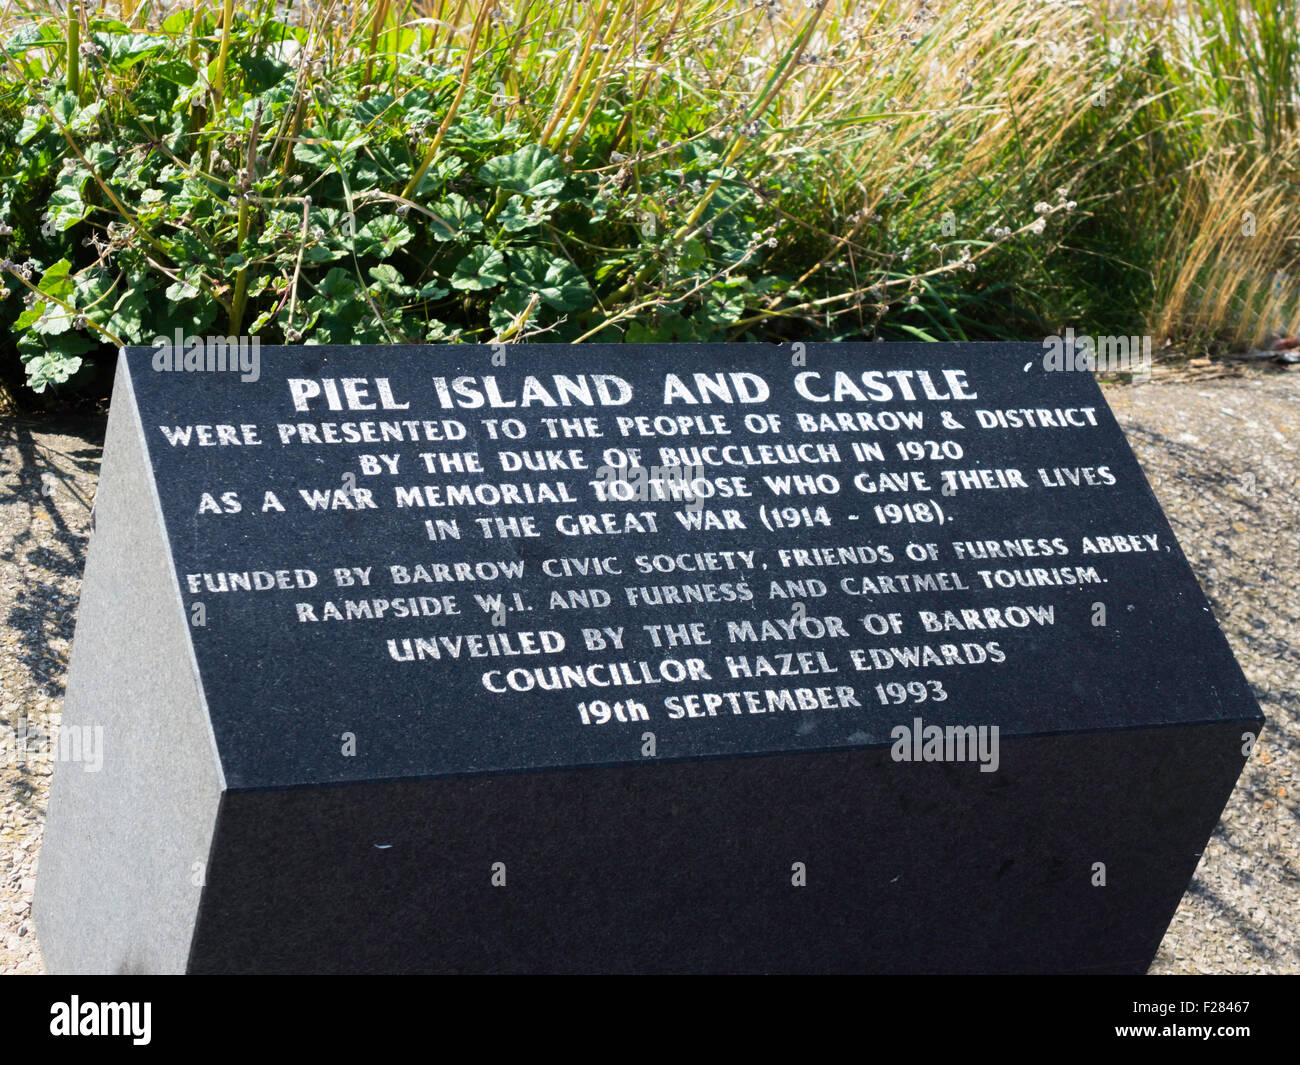 Dedicación La placa para piel Isla y Castillo presentó a Barrow en Furness el duque de Buccleugh como un monumento conmemorativo de guerra para WW1 Foto de stock